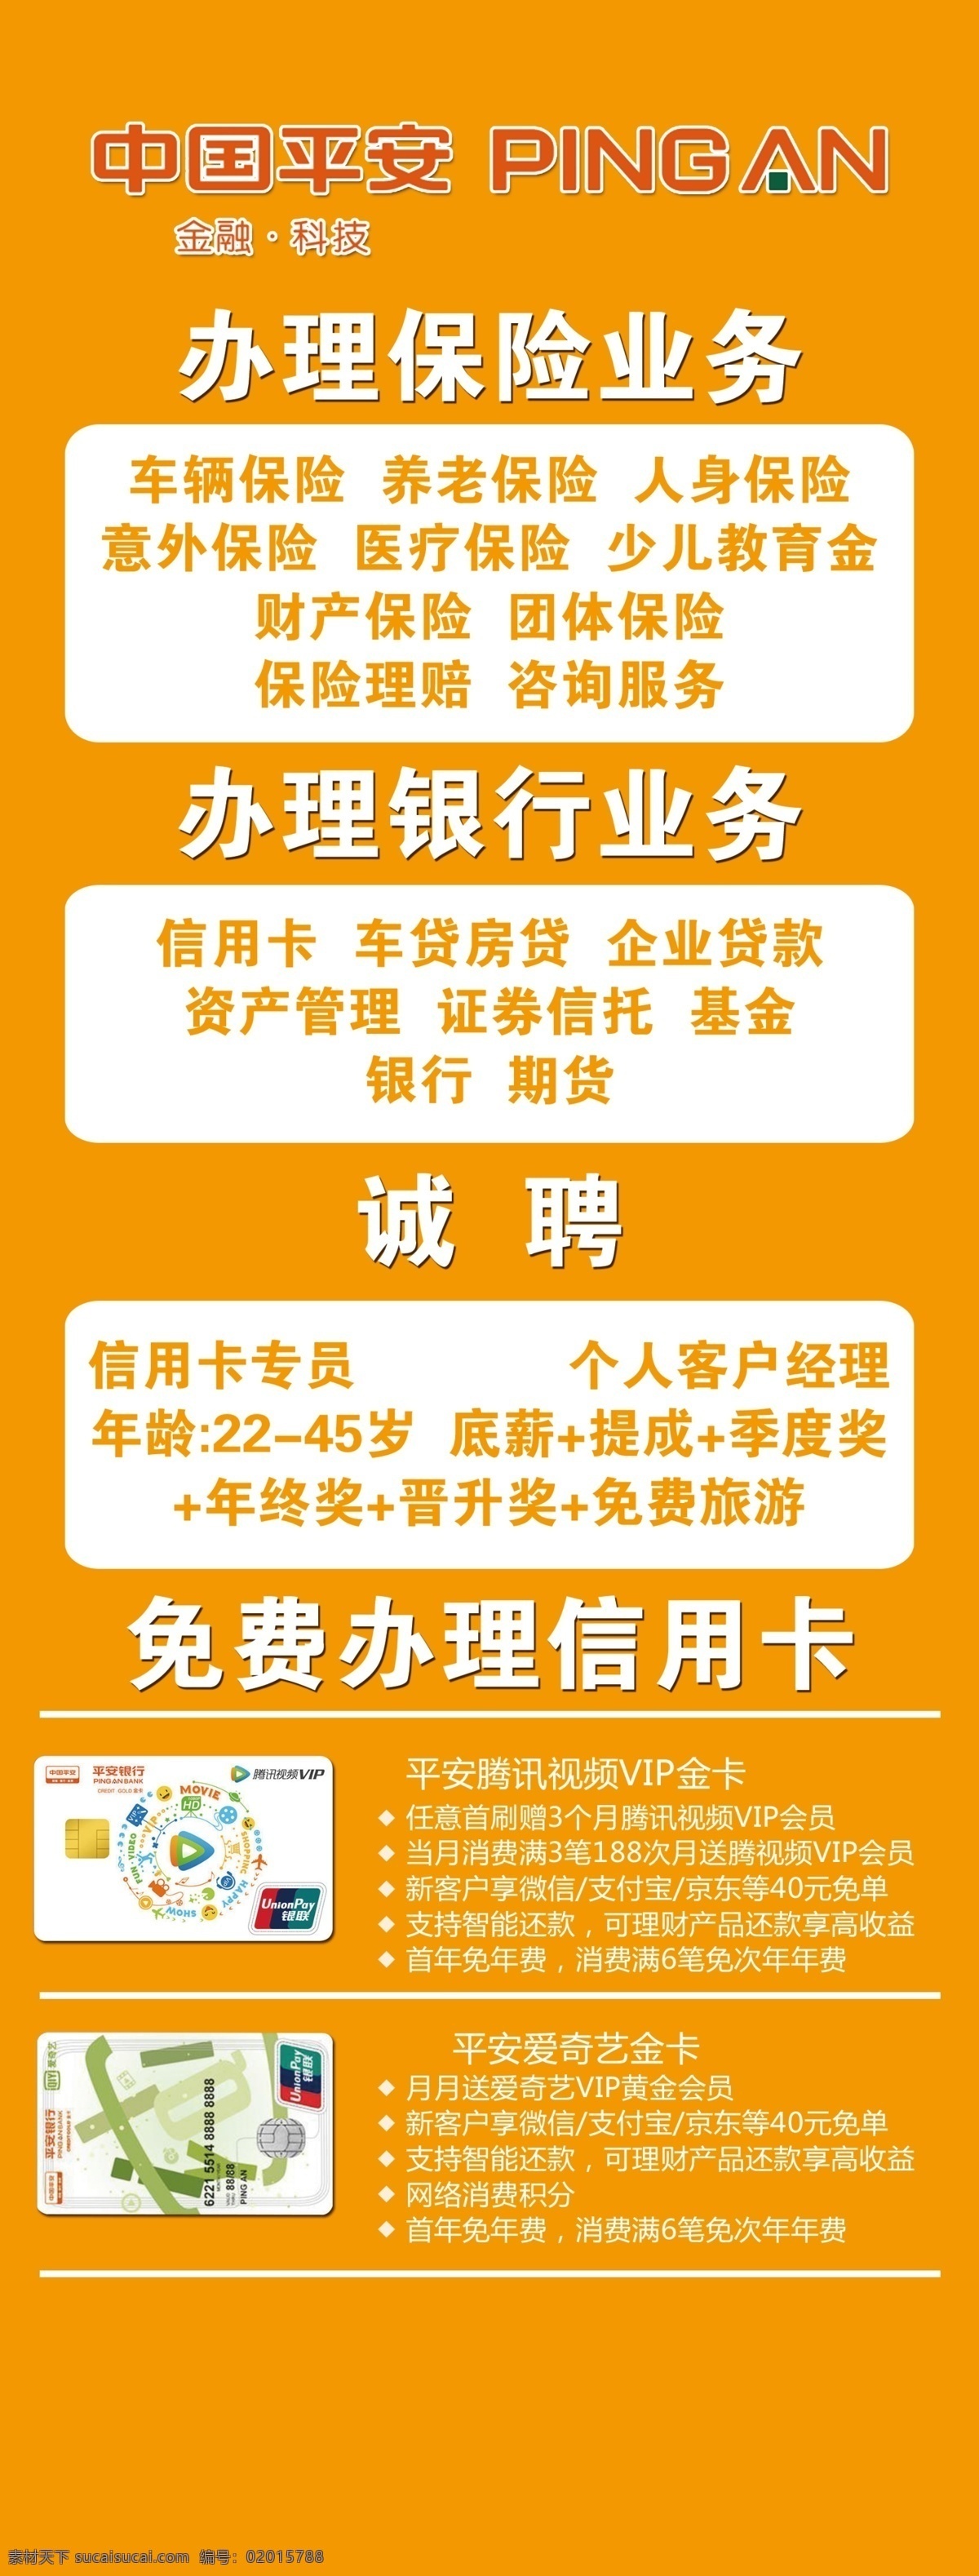 中国平安 车险 信用卡 展架 宣传 展板 平安车险 平安信用卡 平安展架 平安宣传展板